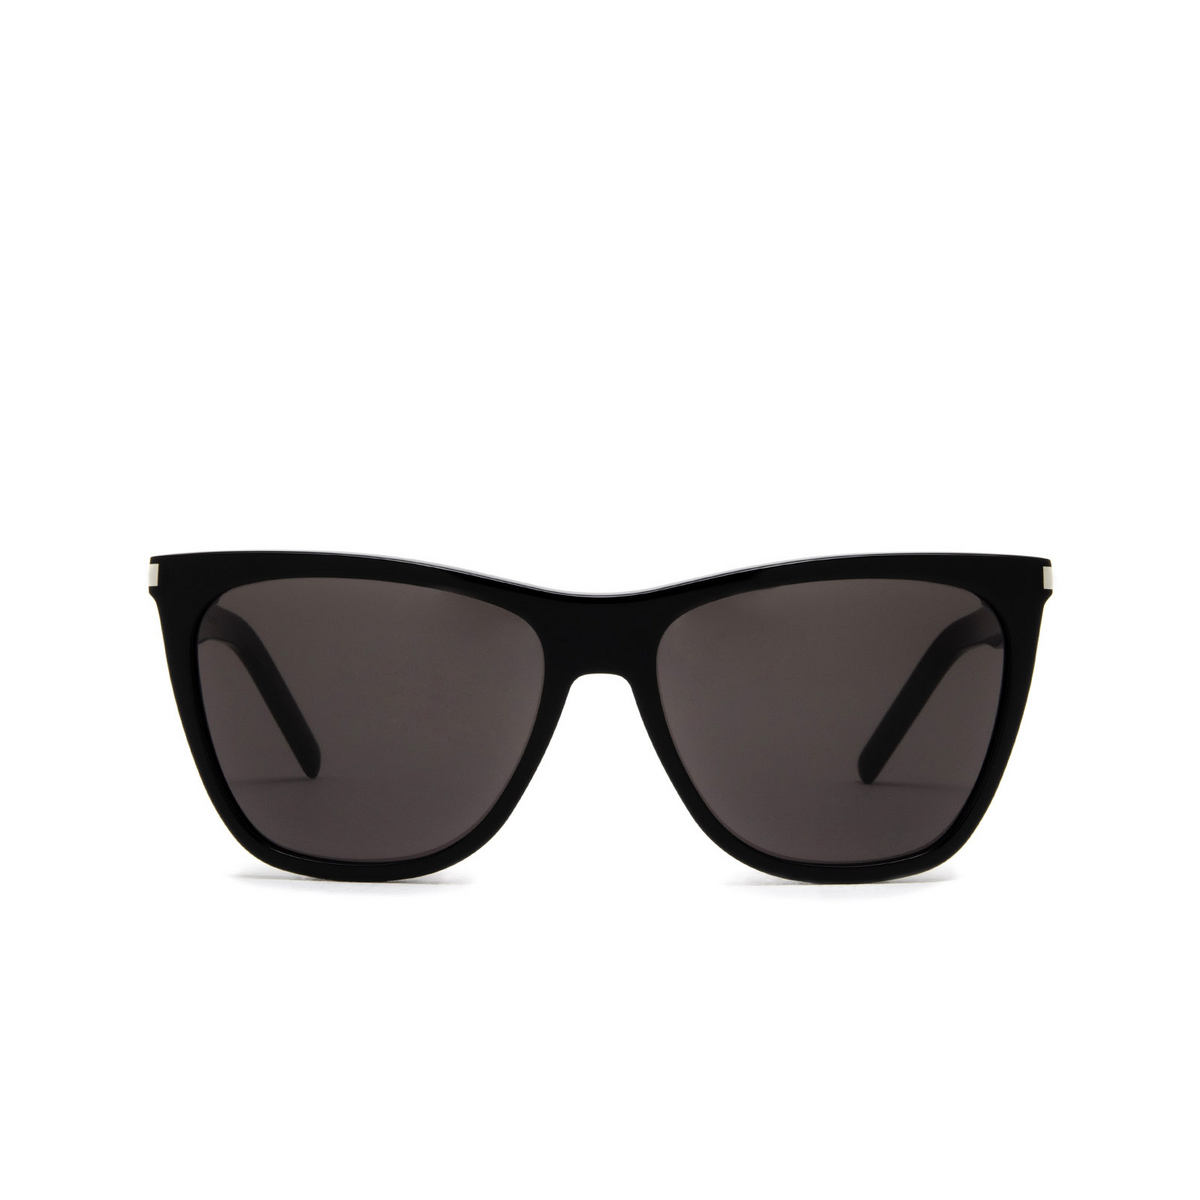 Saint Laurent SL 526 Sunglasses 001 Black - front view